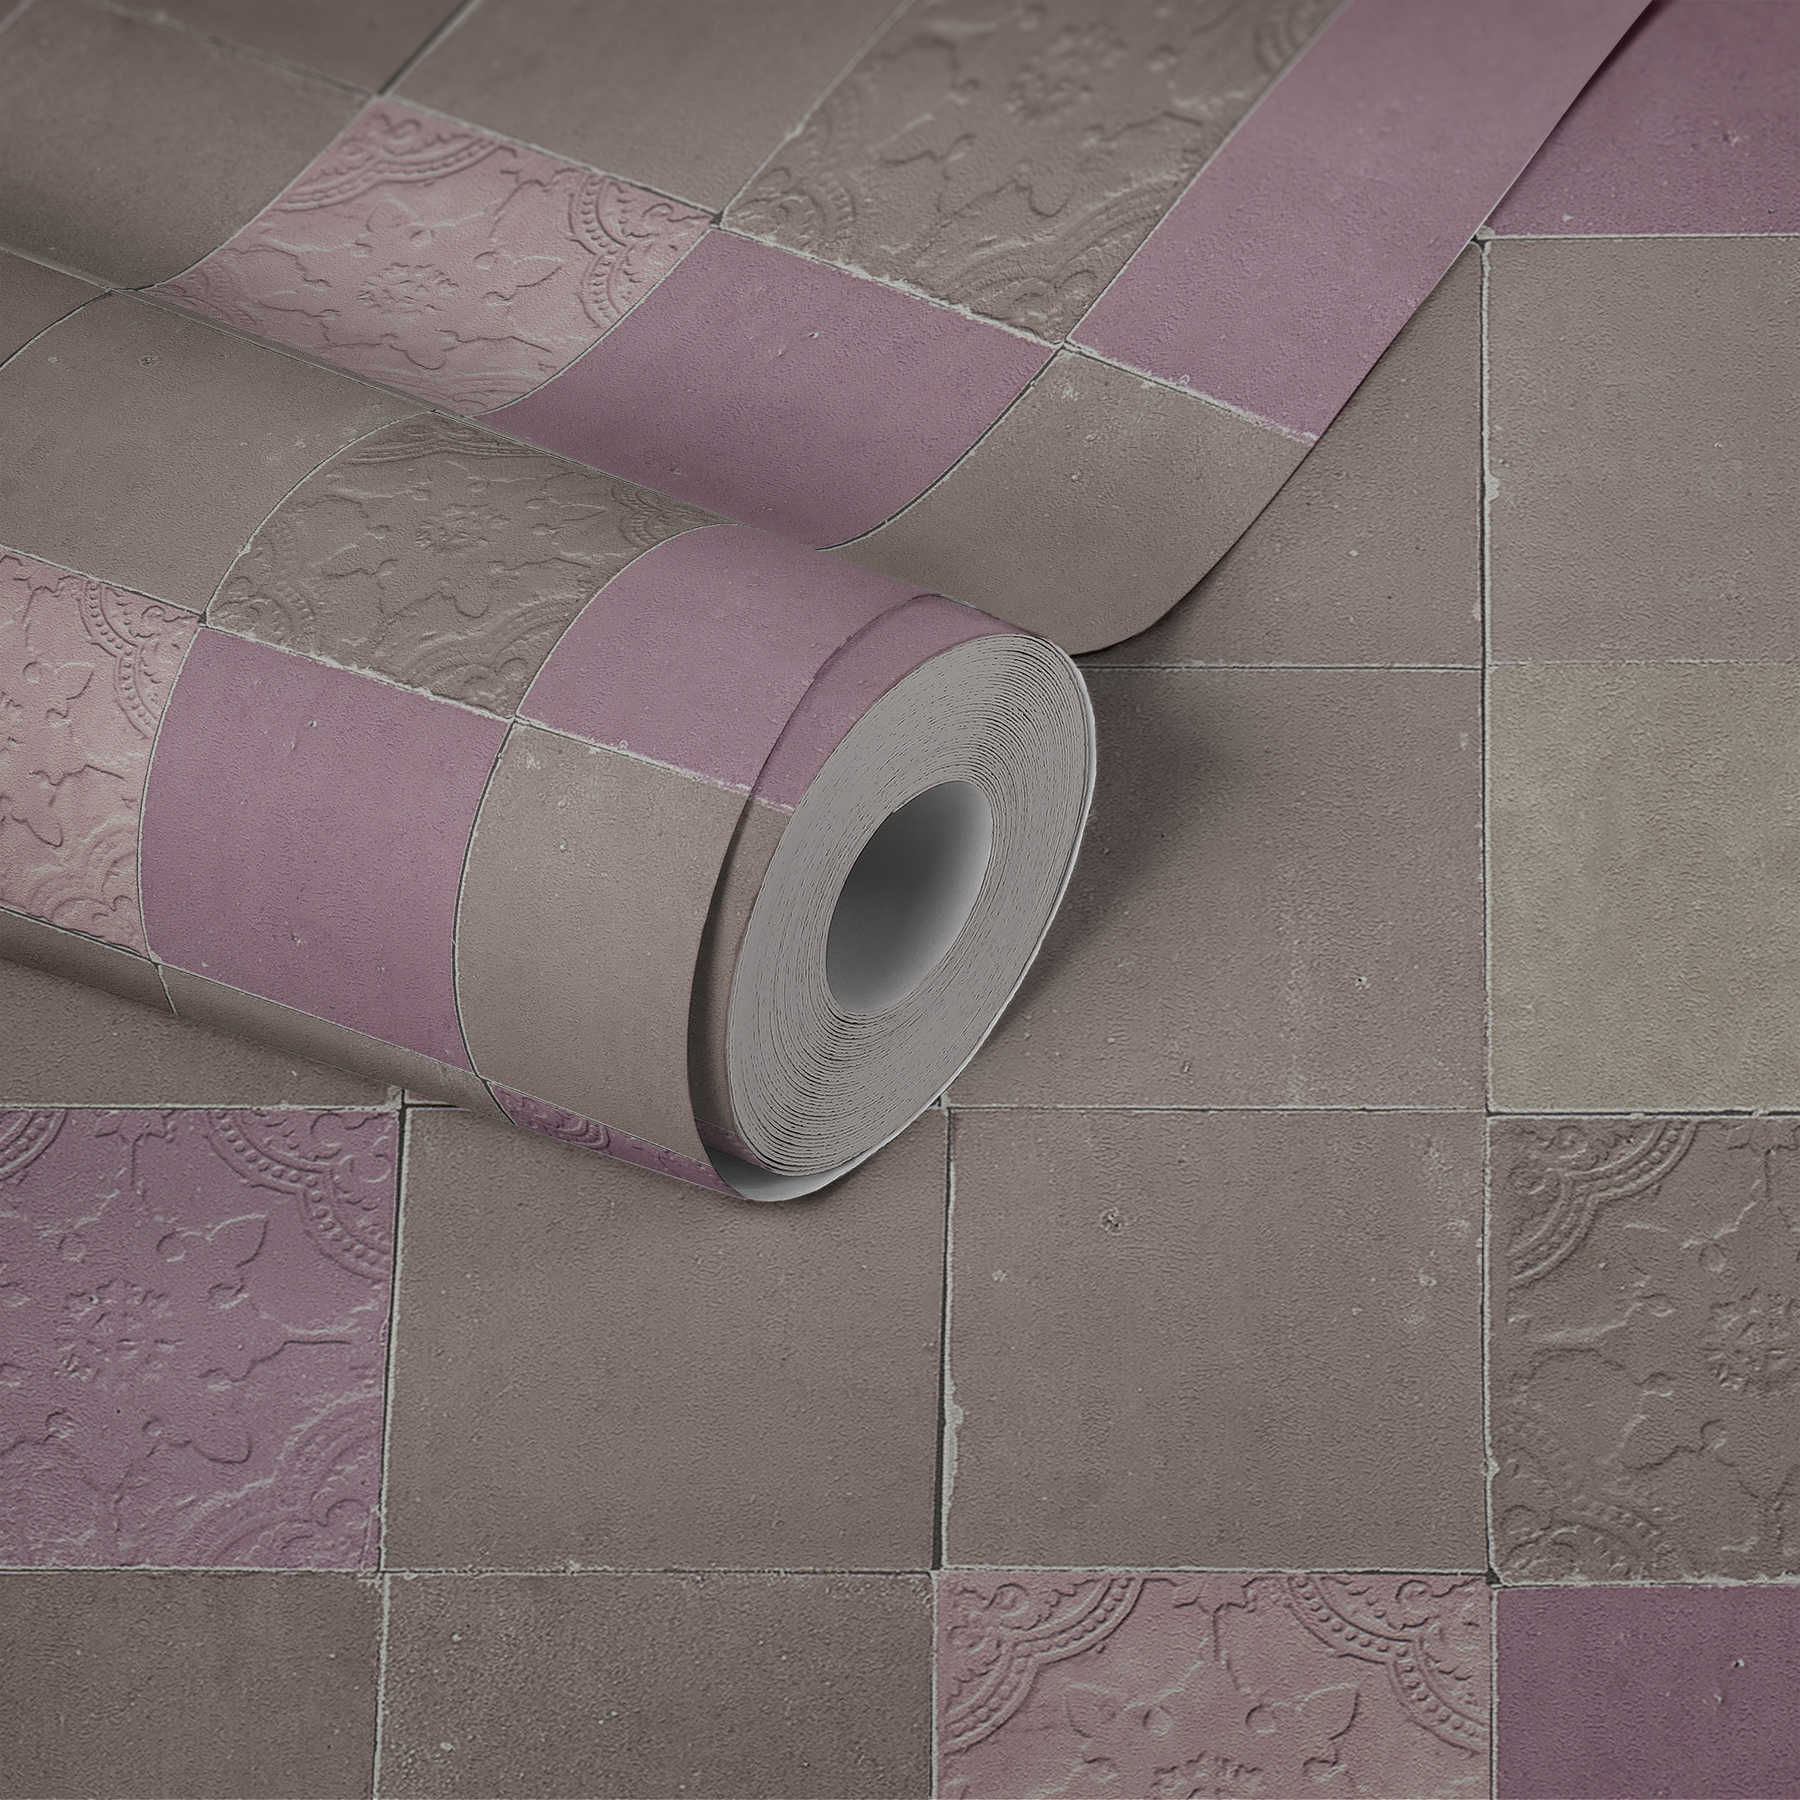             Oriental tile wallpaper - grey, purple, beige
        